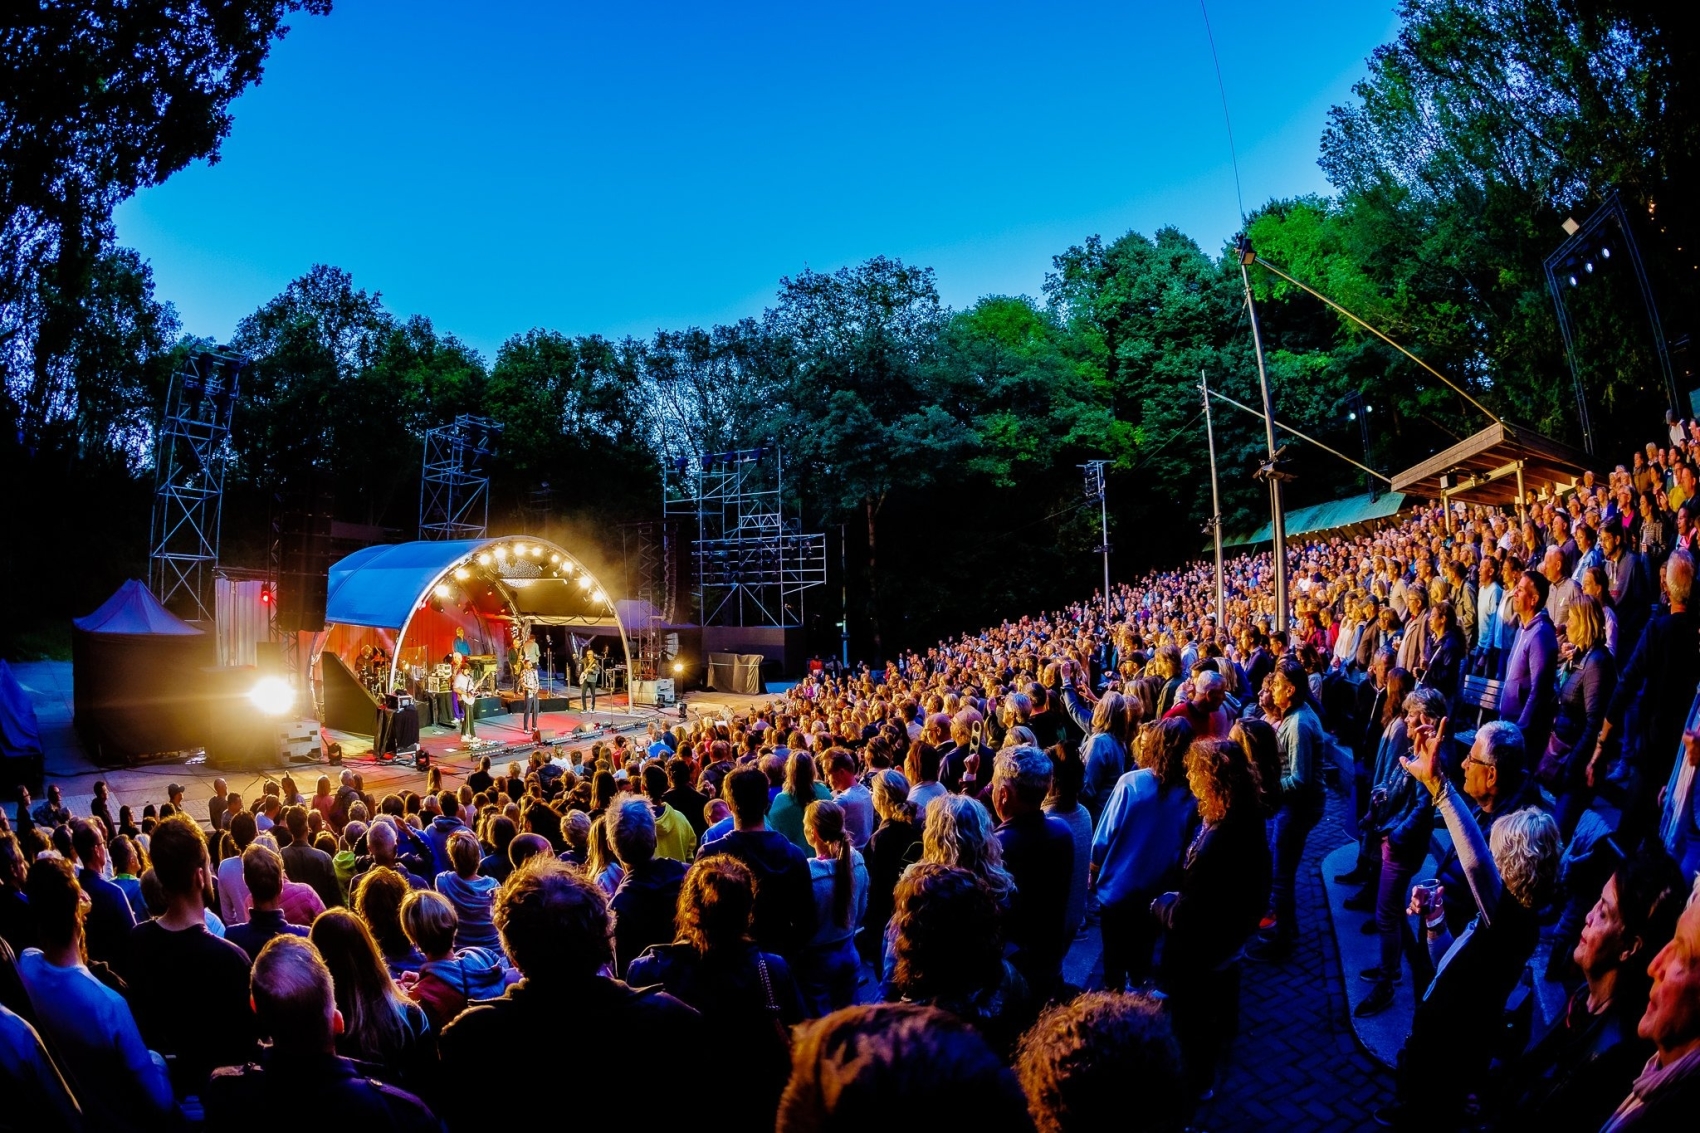 Enjoy outdoor concerts at Live at Amsterdamse Bos